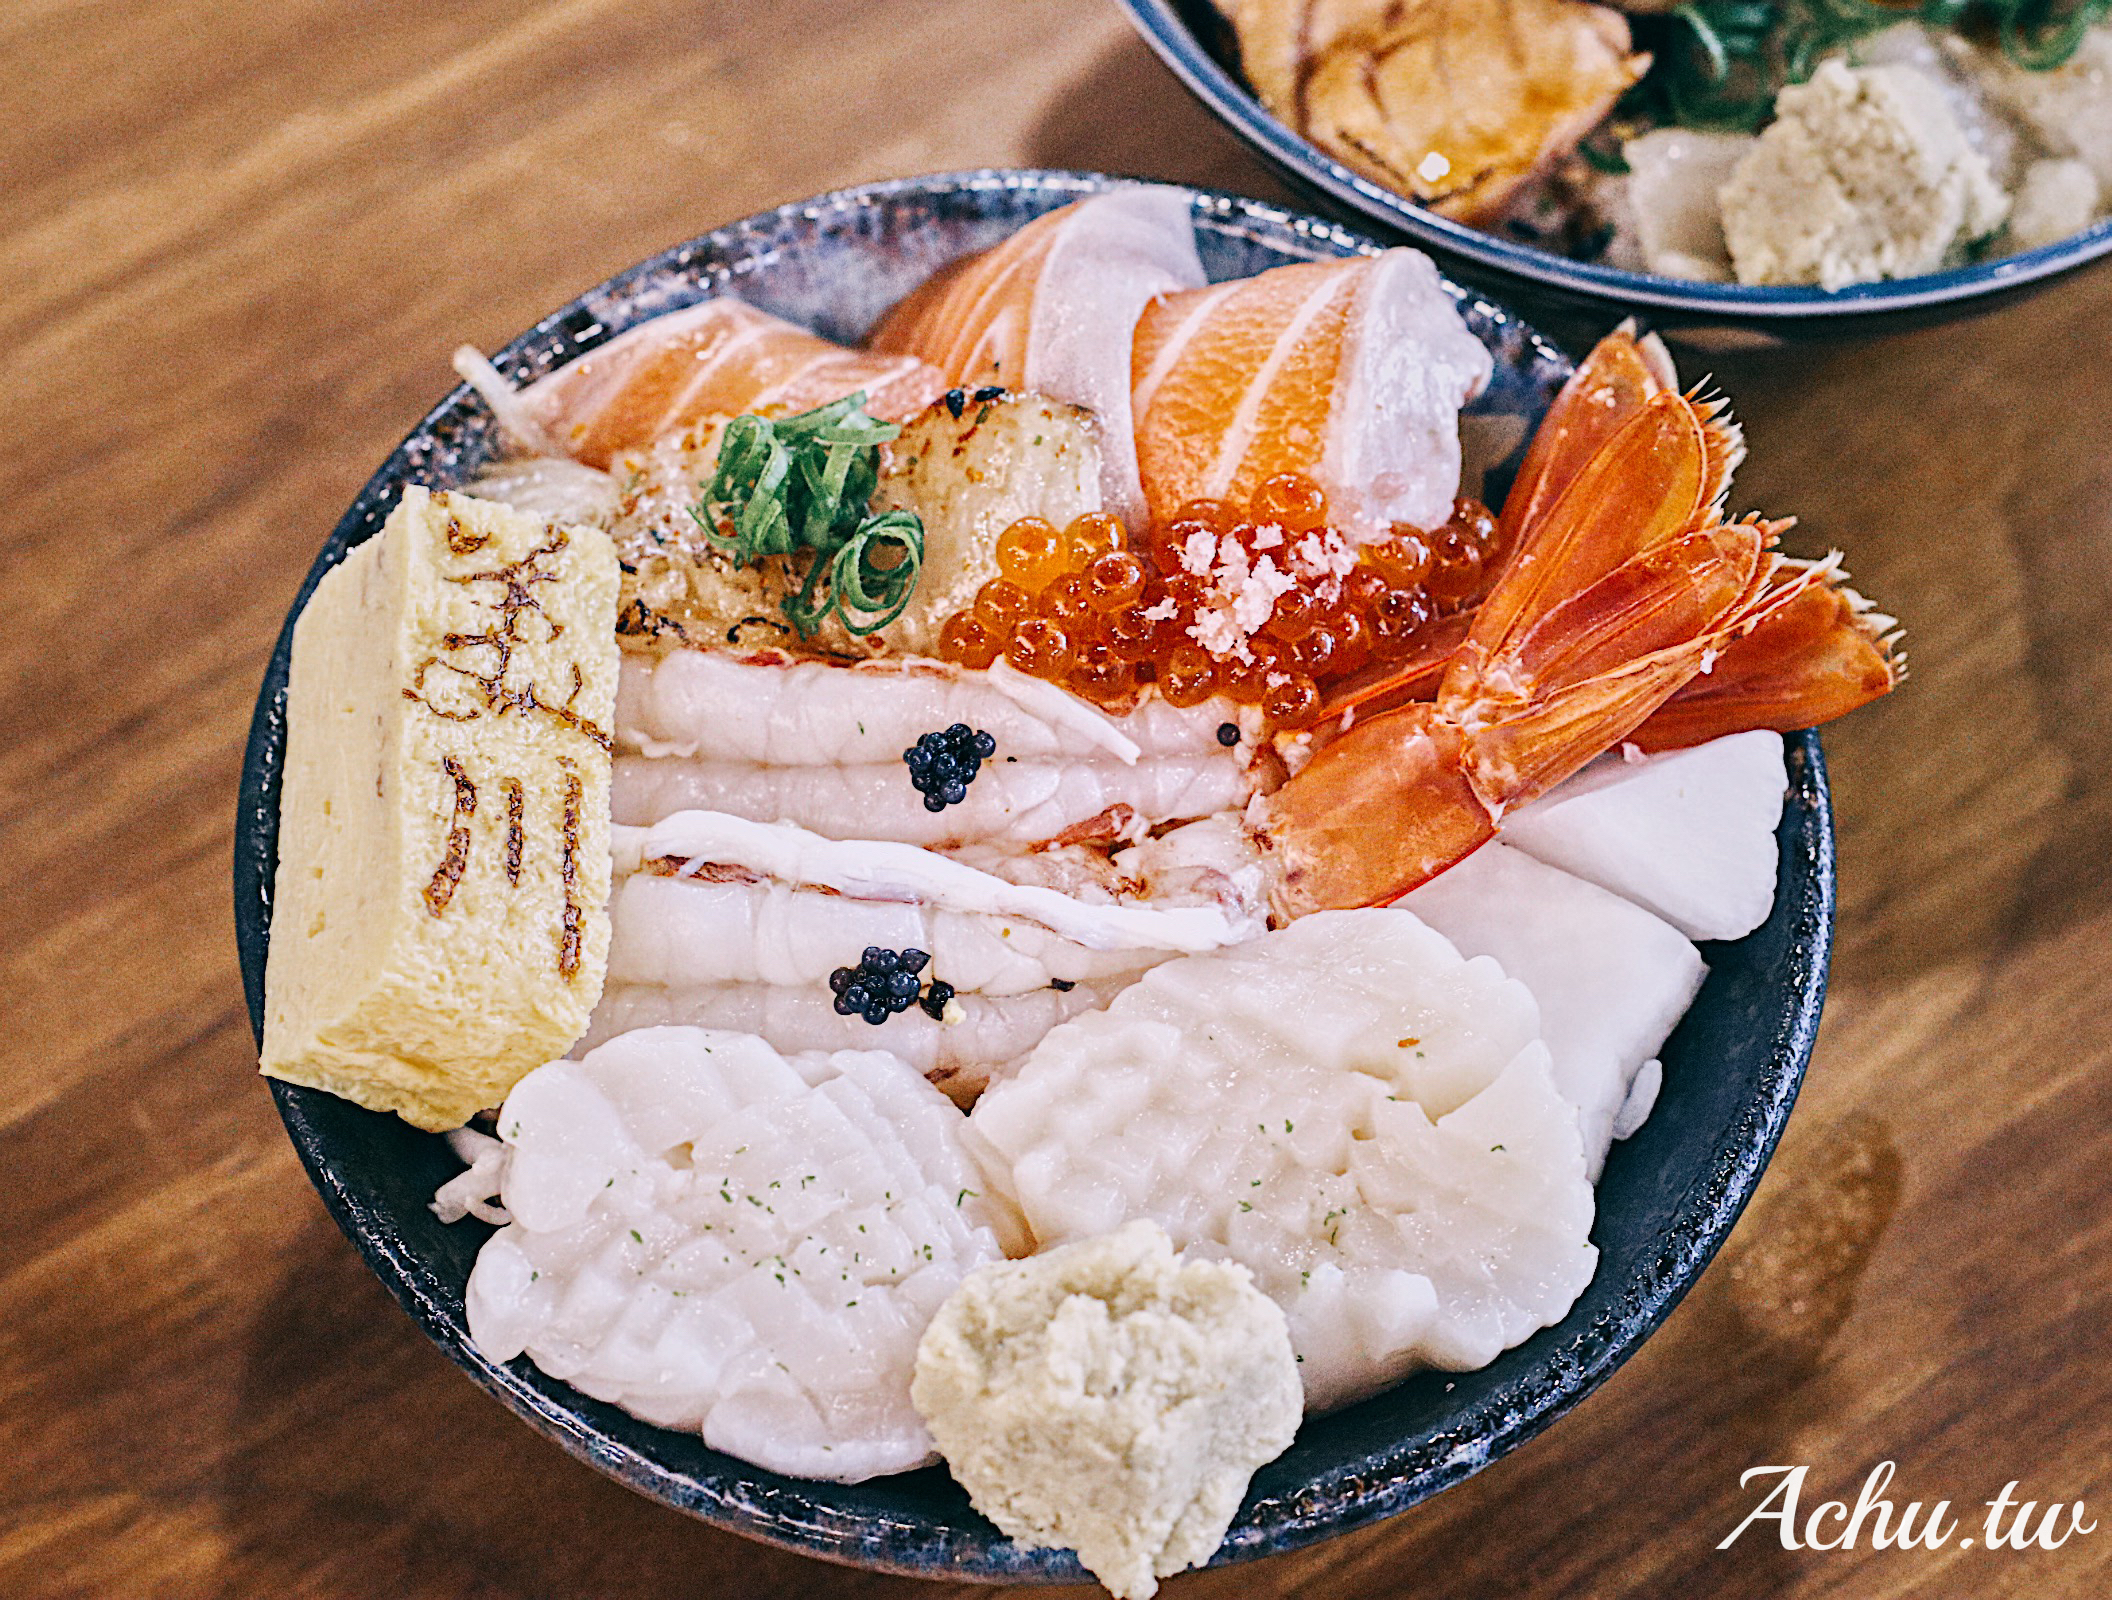 【內湖美食】美川壽司mikawa 新鮮食材 一次上癮令人驚豔的海鮮丼飯 (菜單)